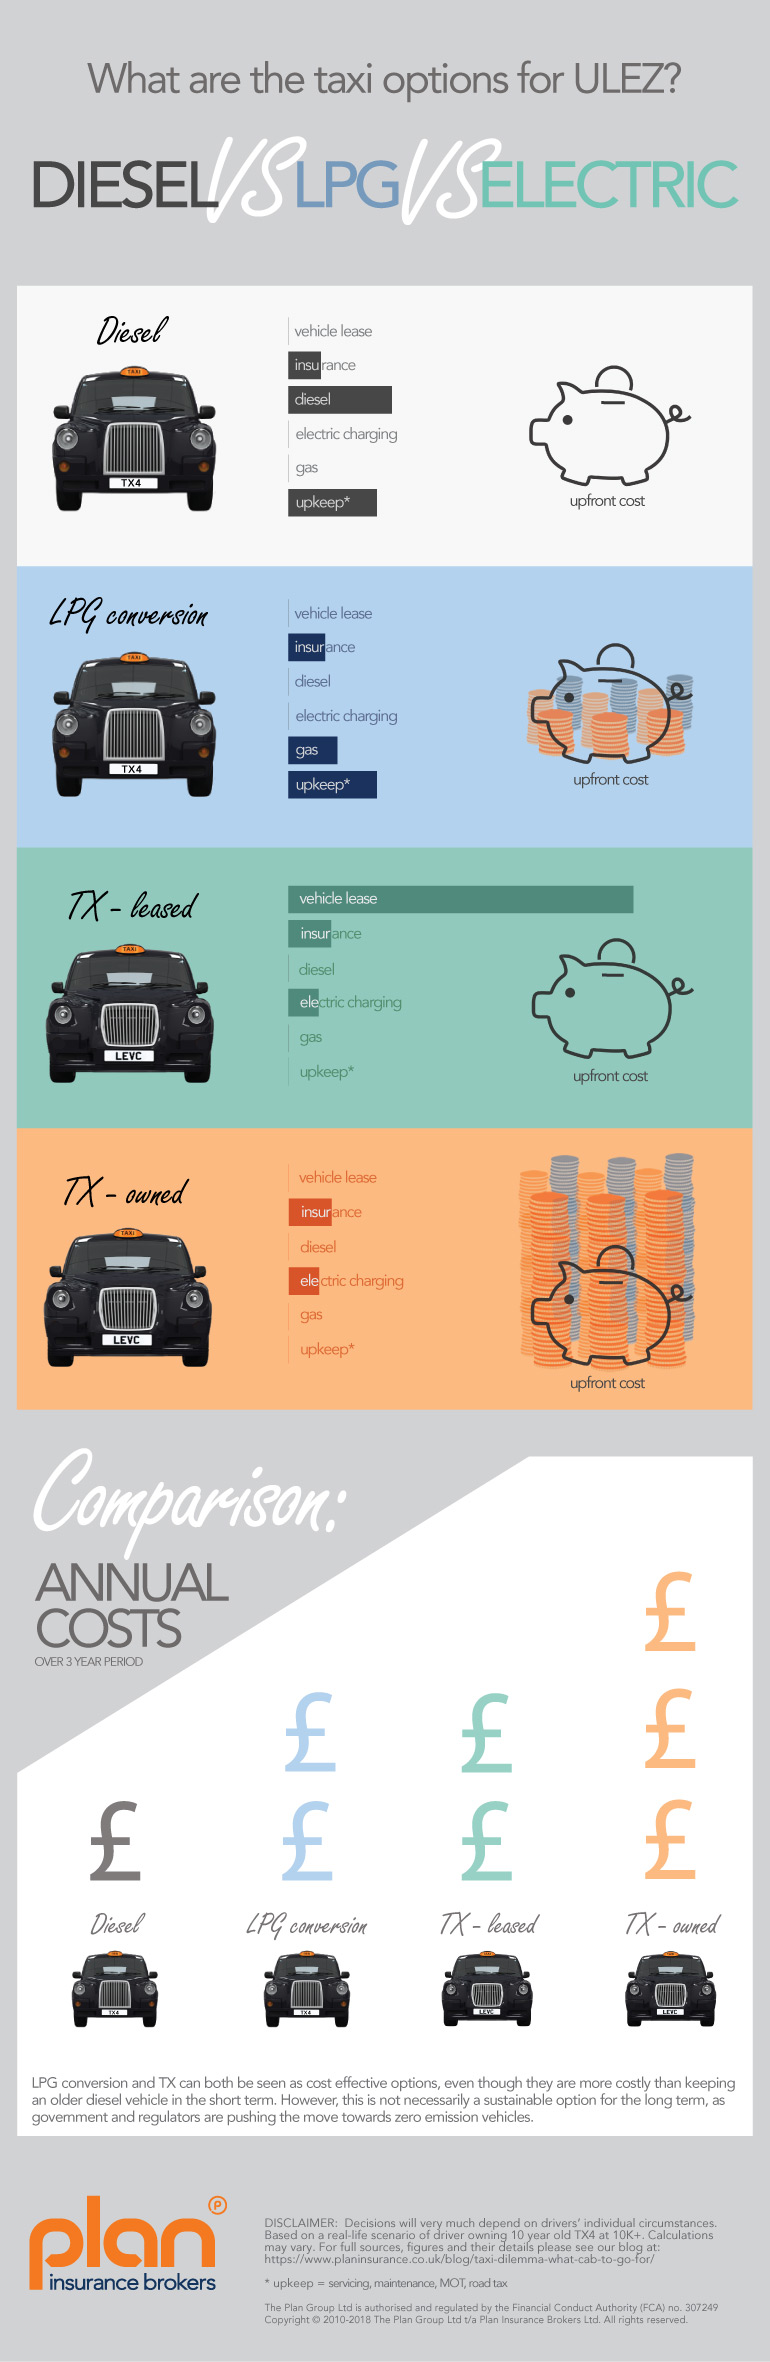 Diesel vs LPG vs Electric - infographic